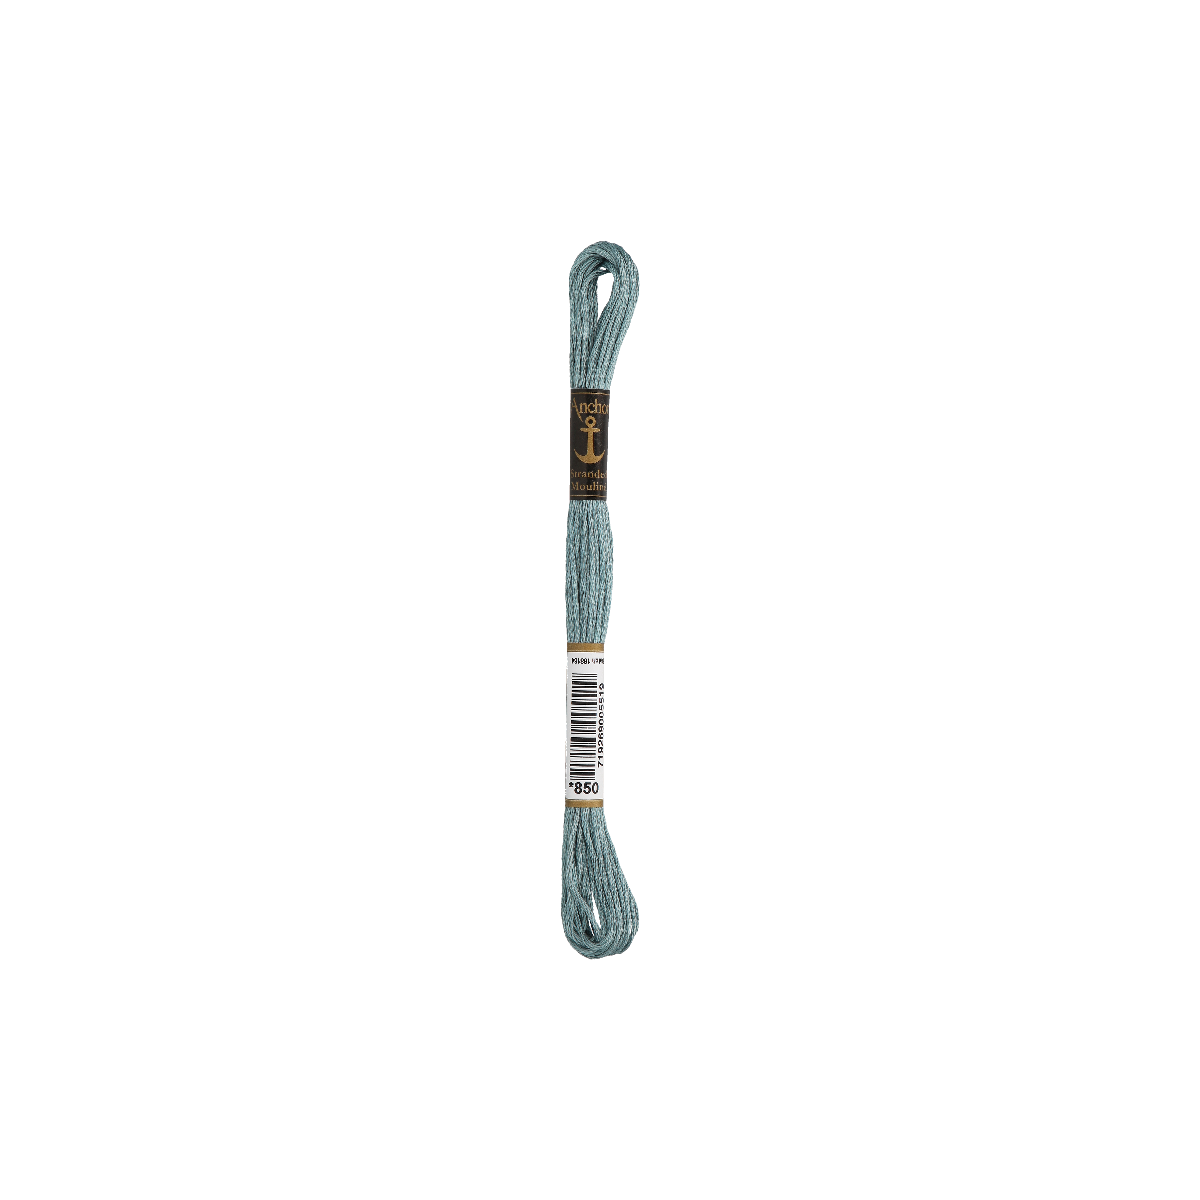 Anchor Sticktwist 8m, grigio-blu, cotone, colore 850, 6 fili